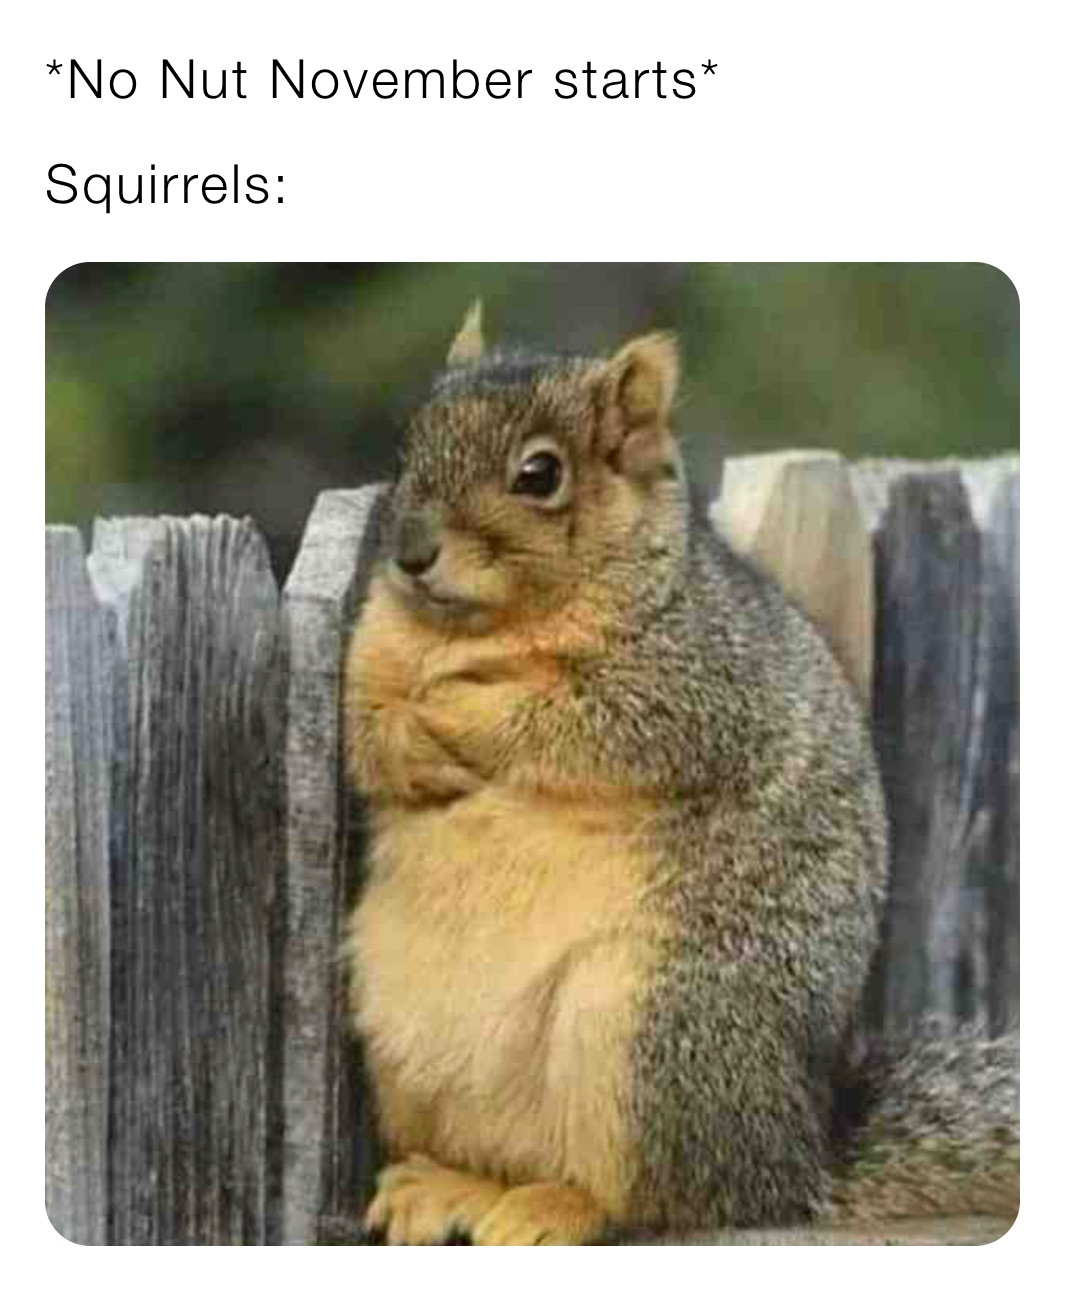 *No Nut November starts*
Squirrels: